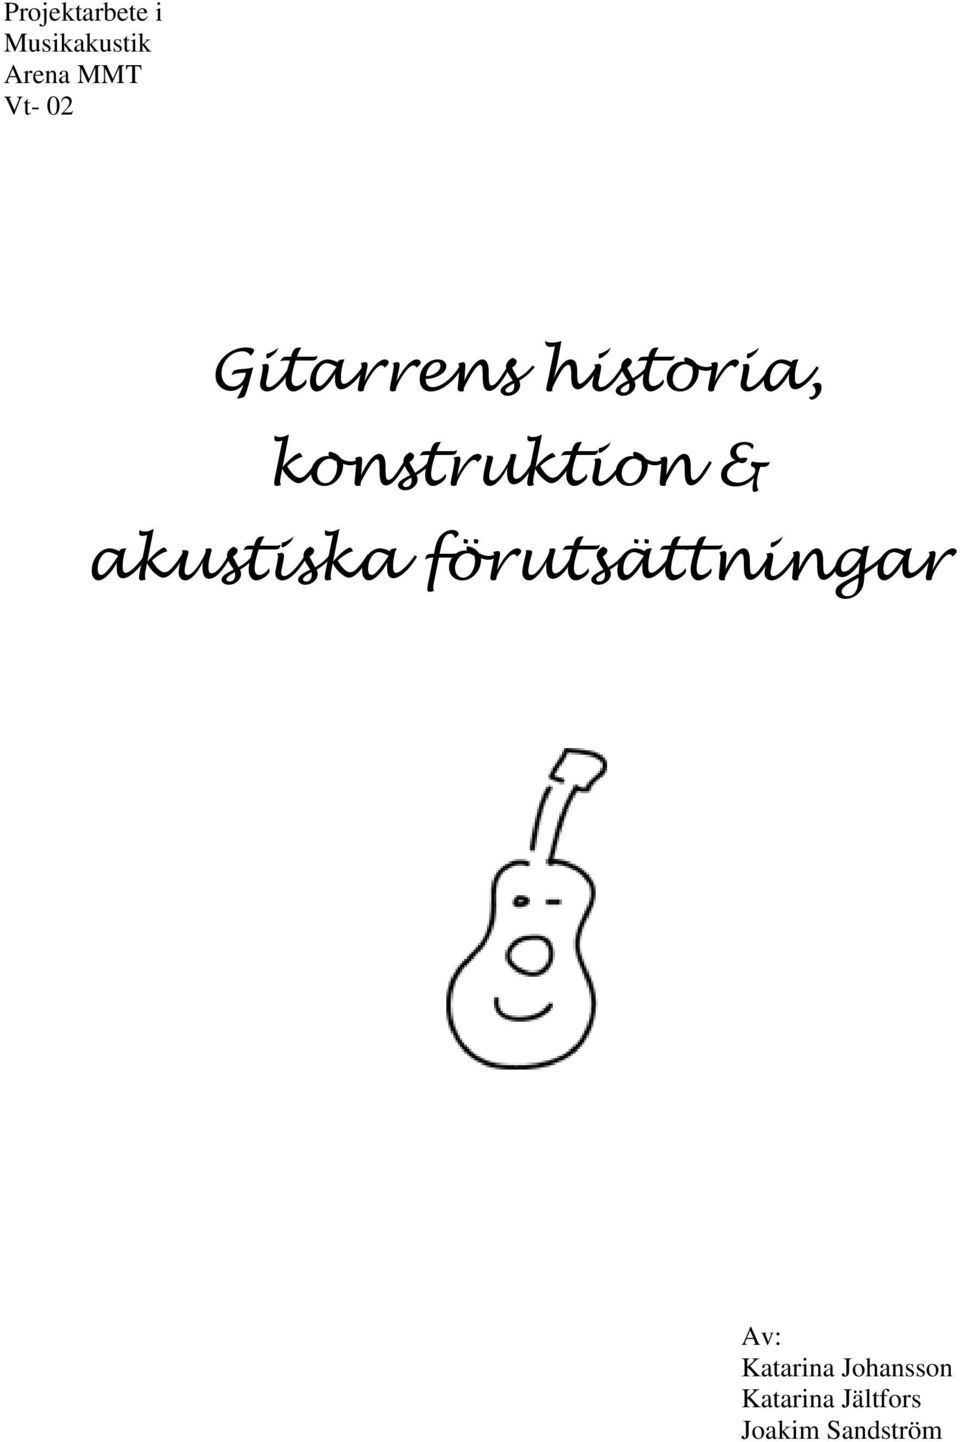 Gitarrens historia, konstruktion & akustiska förutsättningar - PDF ...